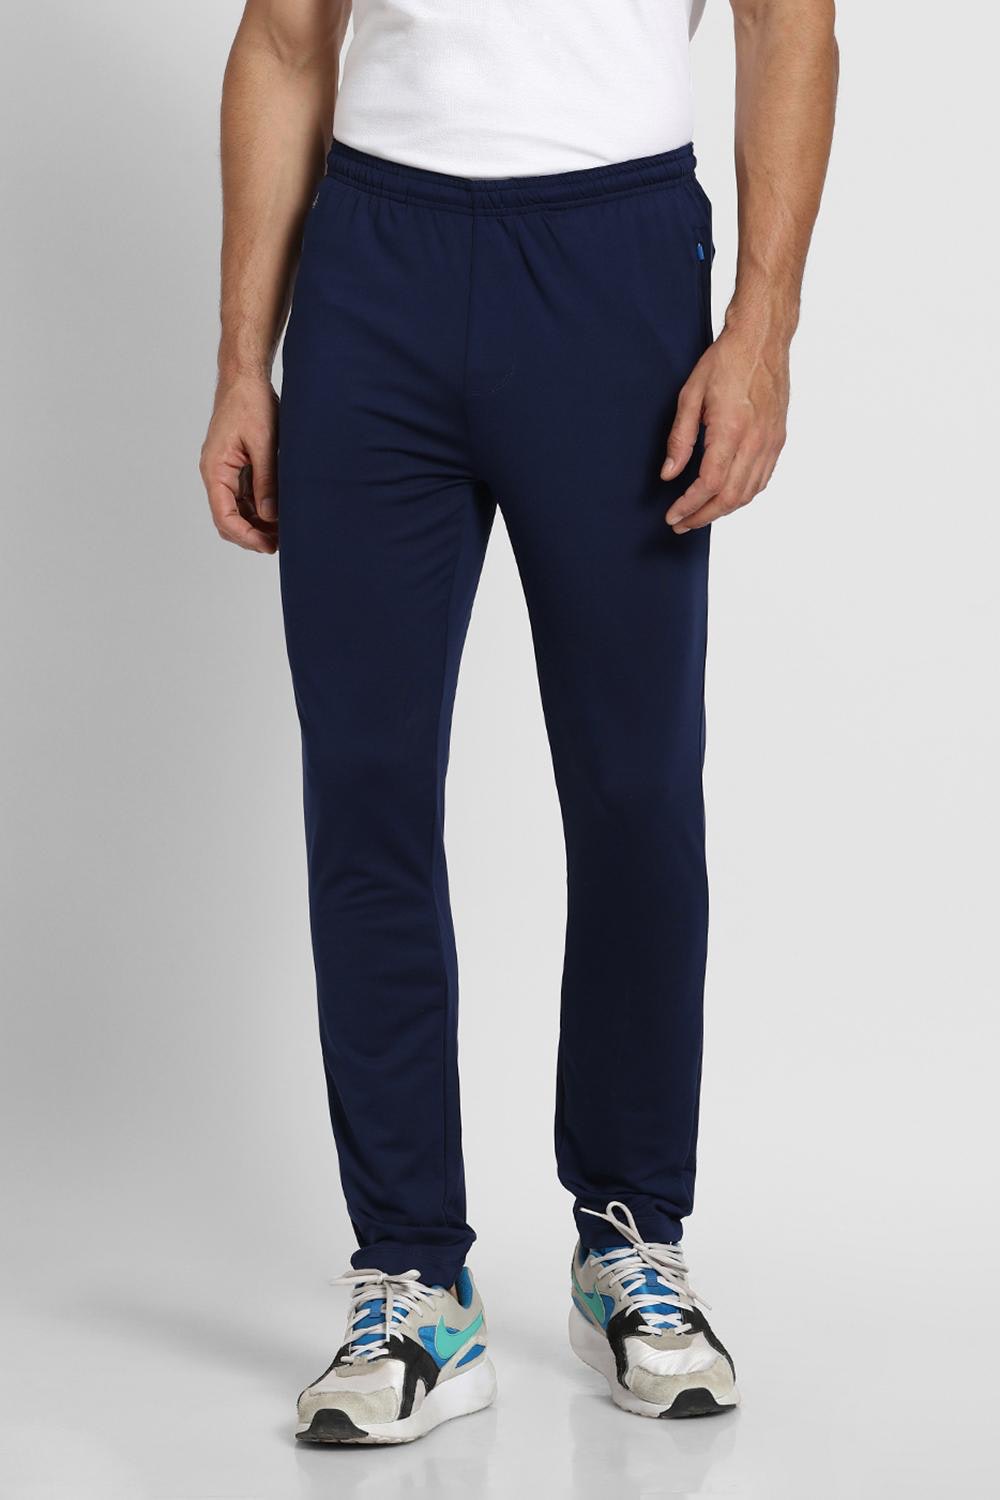 Activewear Pants - Navy blue - Men